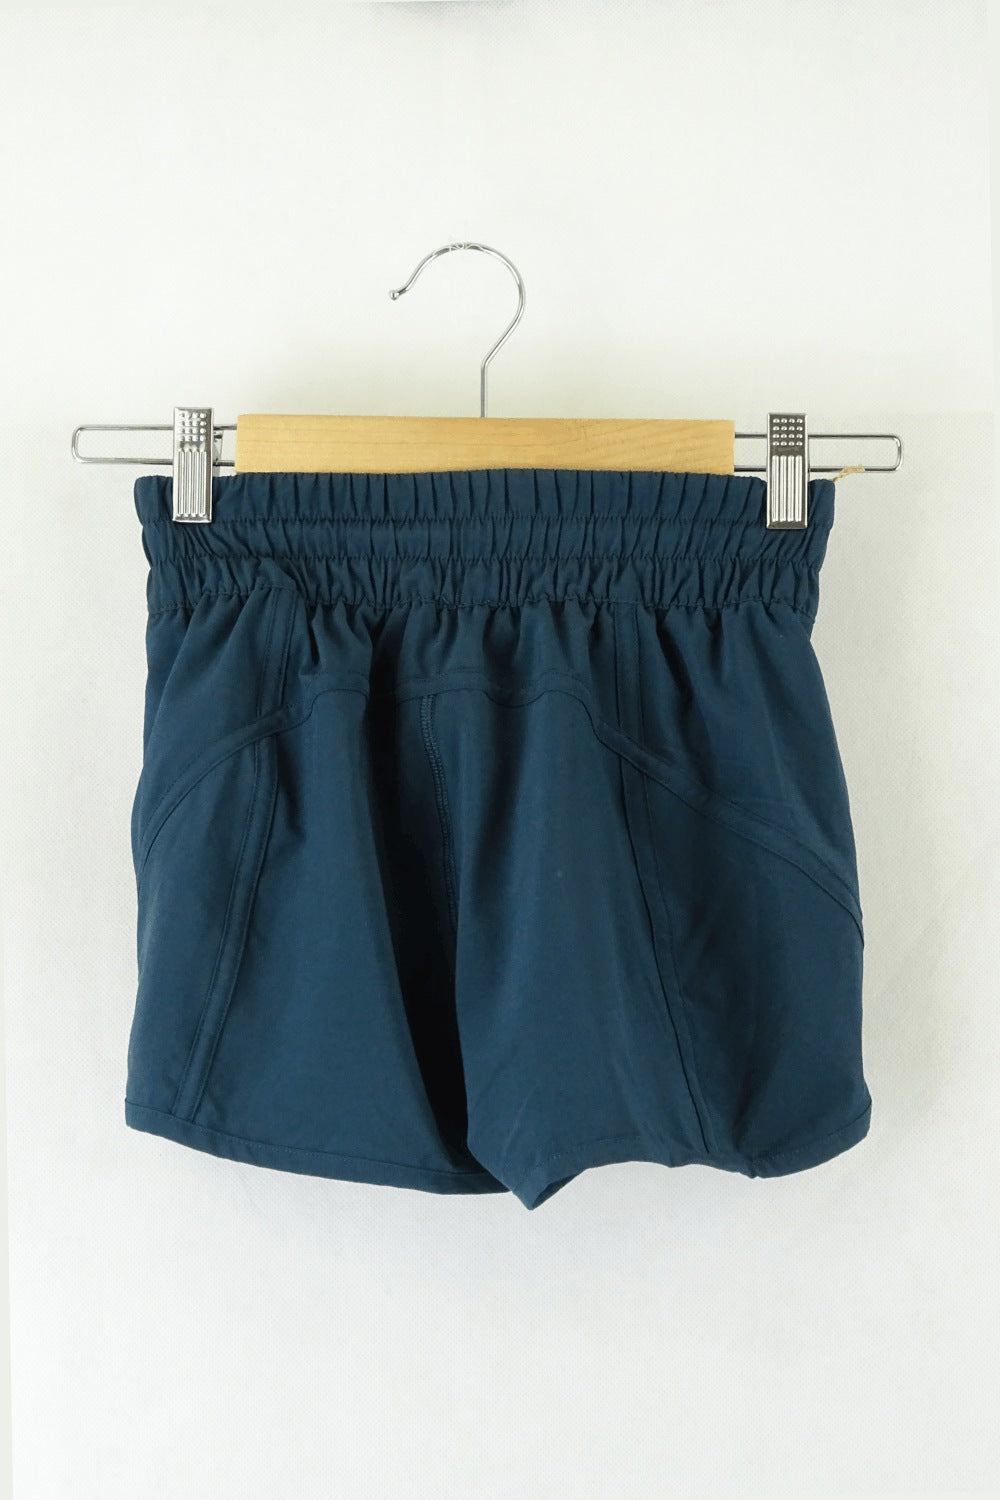 lululemon Green Shorts 0 (AU 6)